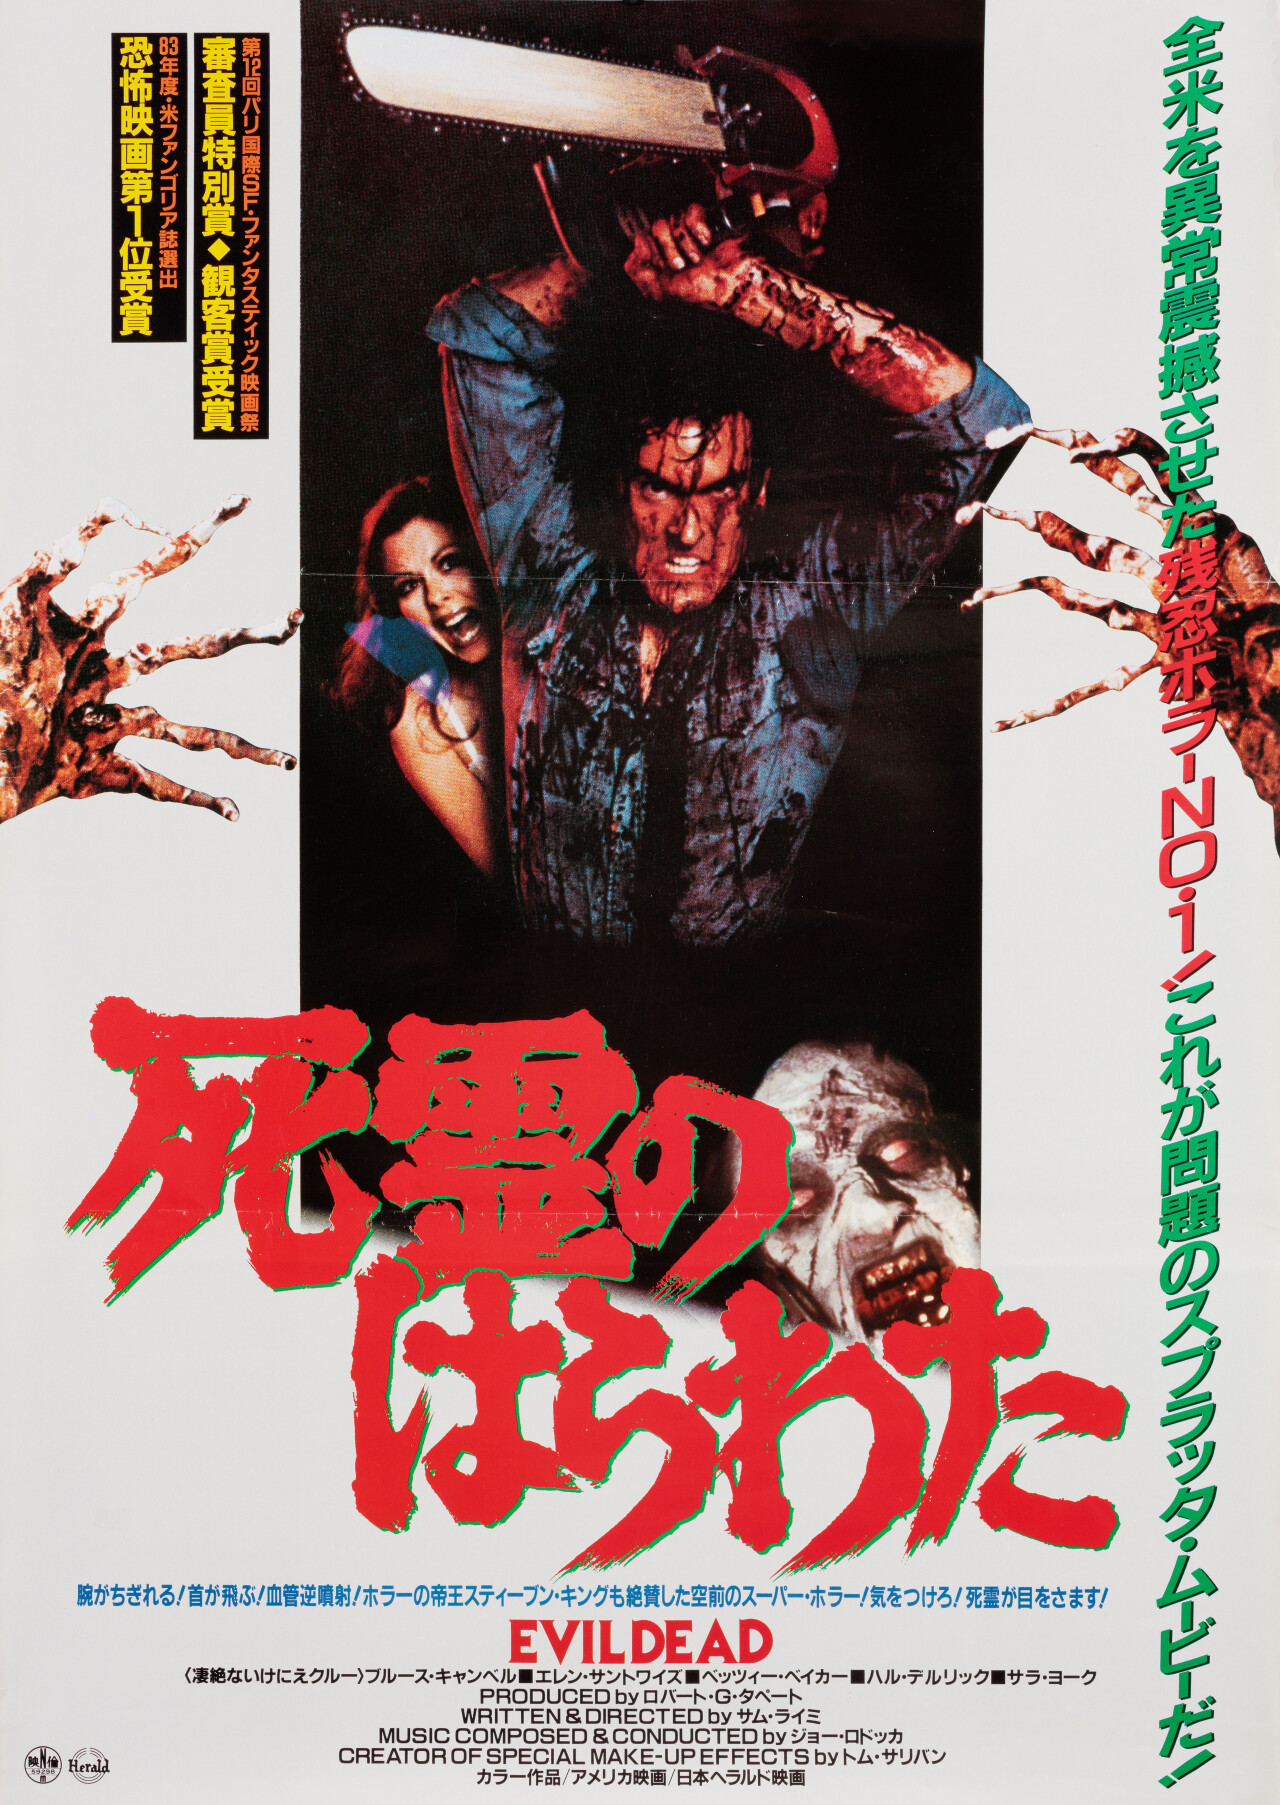 Зловещие мертвецы (The Evil Dead, 1981), режиссёр Сэм Рэйми, японский постер к фильму (ужасы, 1985 год)